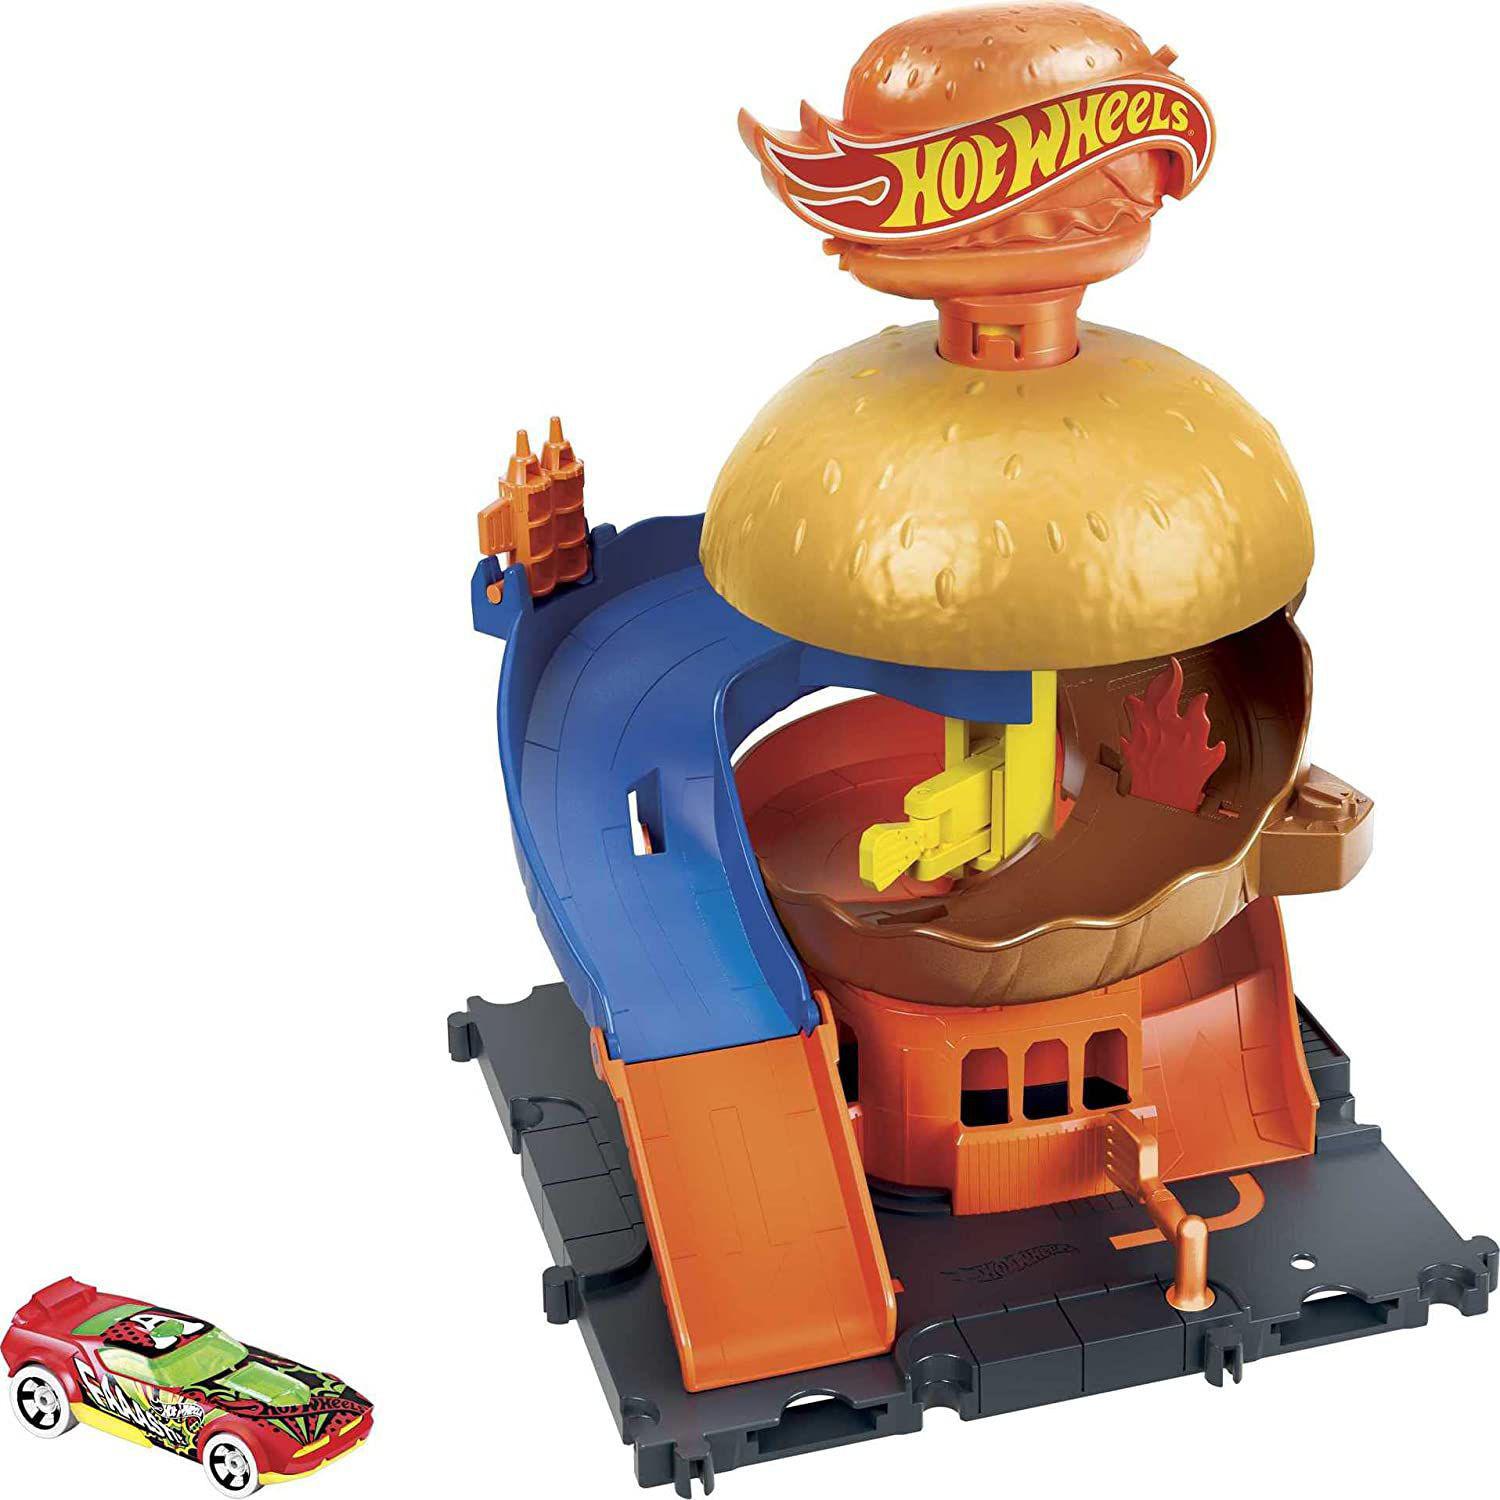 Pista Hot Wheels City Drive-thru De Hambúrguer Mattel